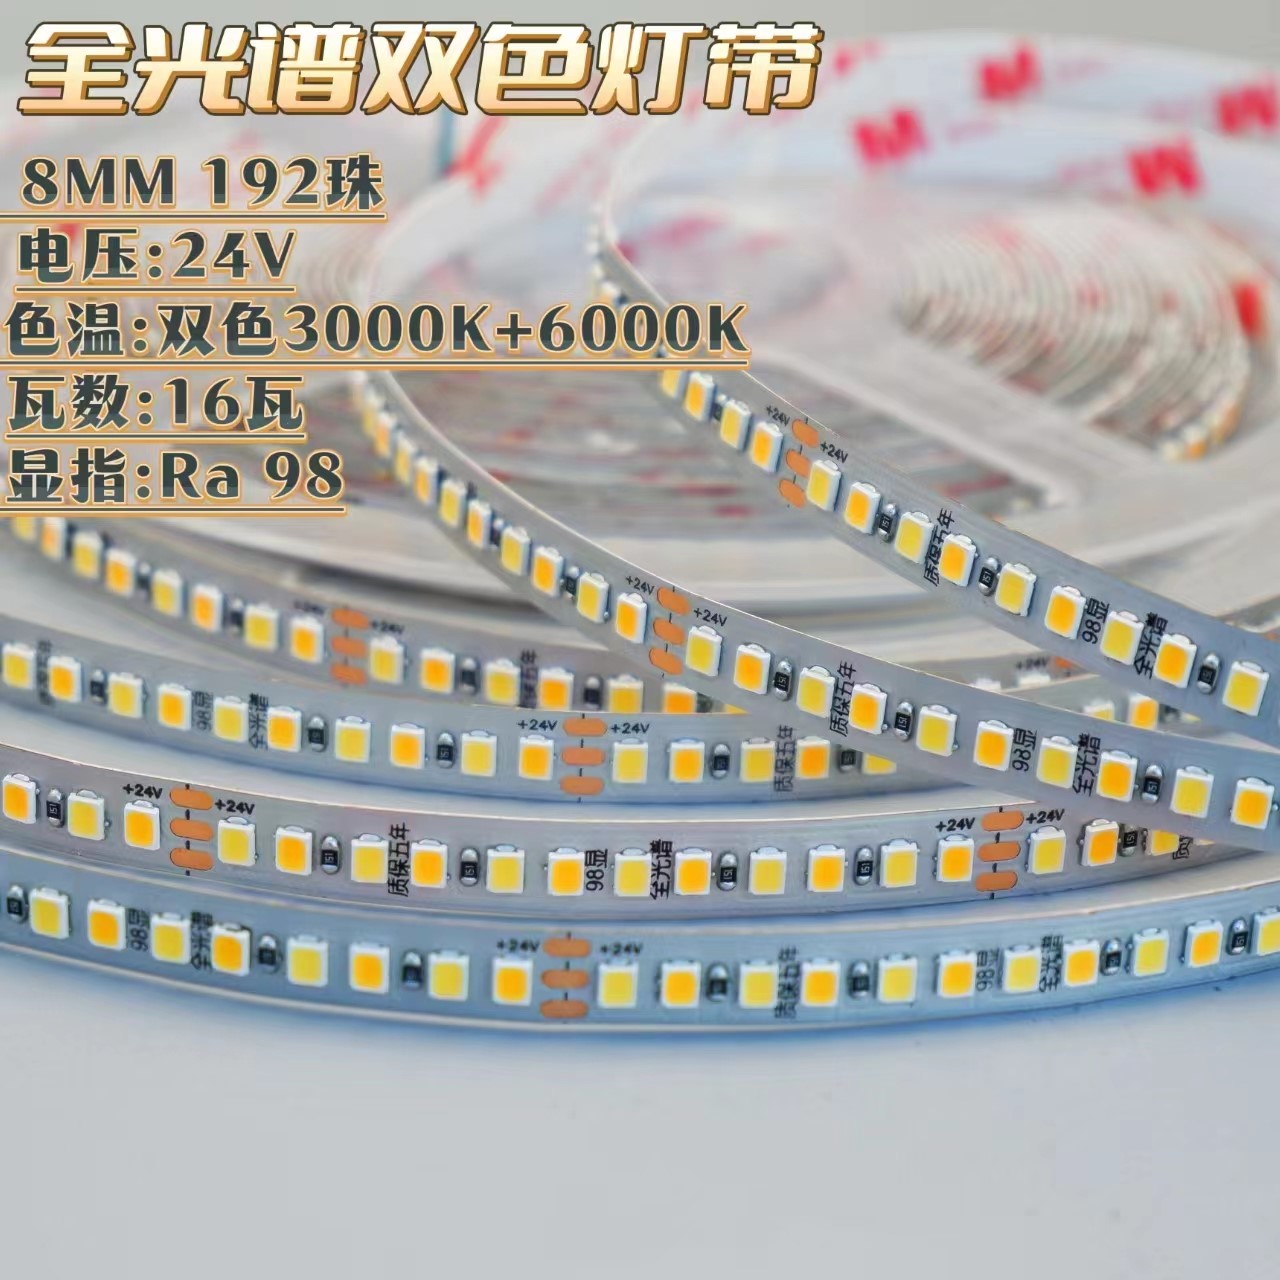 Qihao full-spectrum two-color 24V light strip